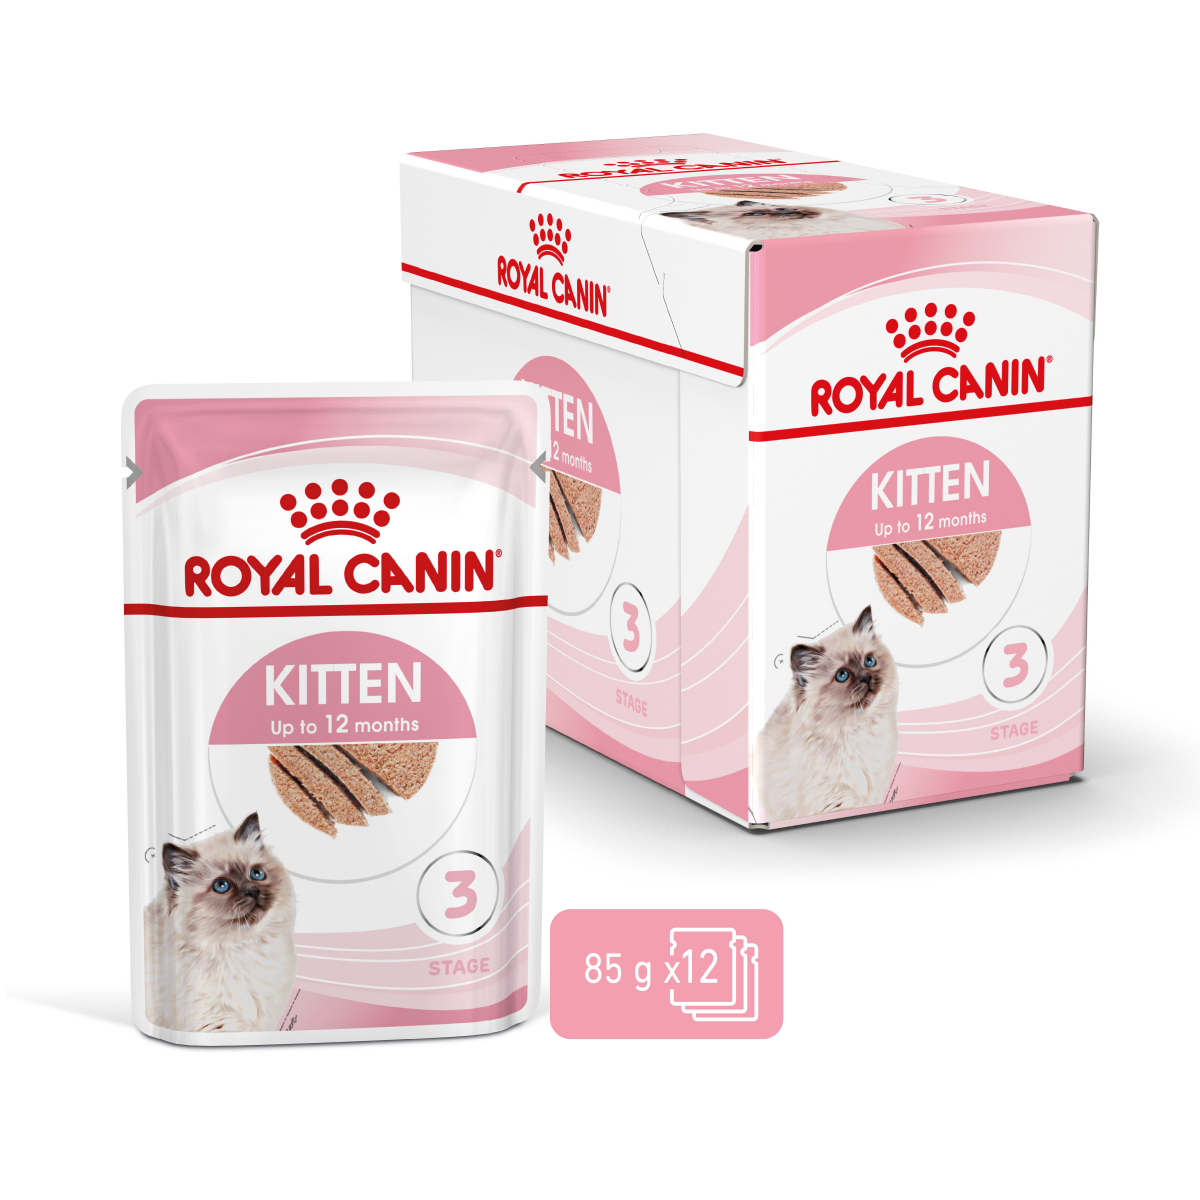 Royal Canin Kitten Comida húmeda para gatitos